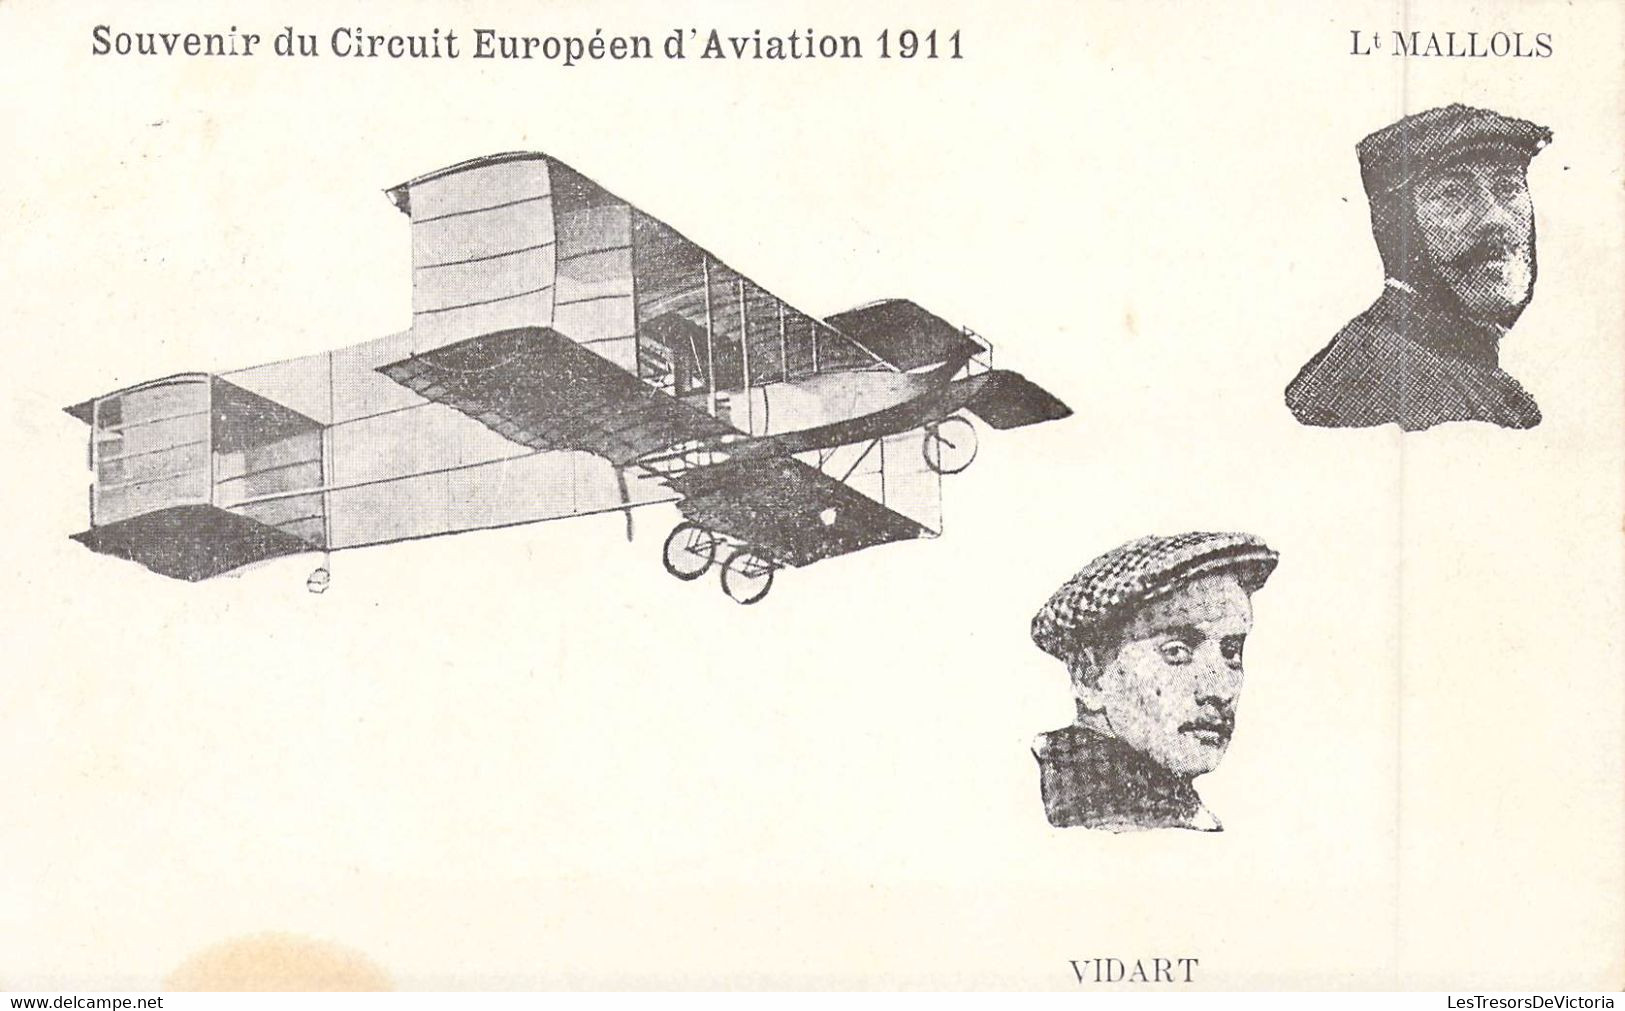 Aviateur - Aviation - Souvenirs Du Circuit D'aviation 1911 - Lt Mallols - Mr Vidart - Carte Postale Ancienne - Flieger